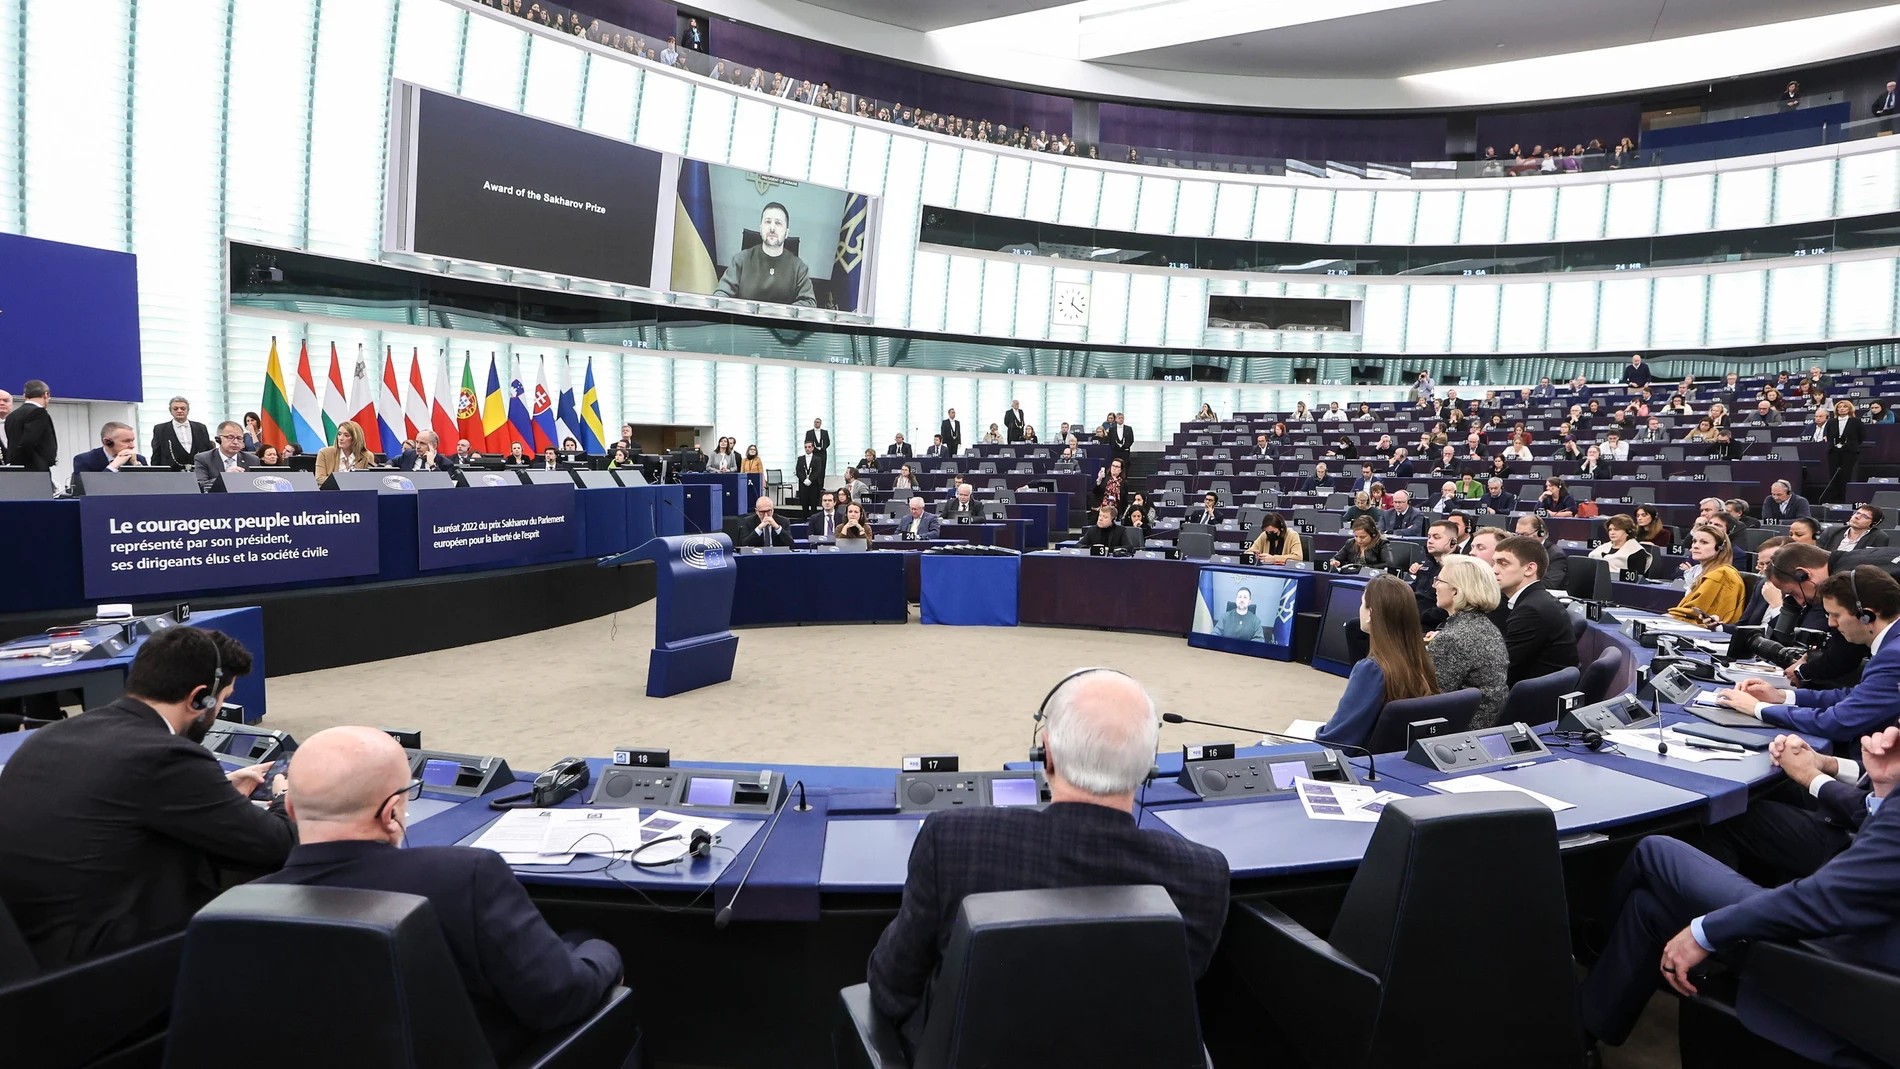 El "Qatargate" ha dañado la imagen pública del Parlamento Europeo